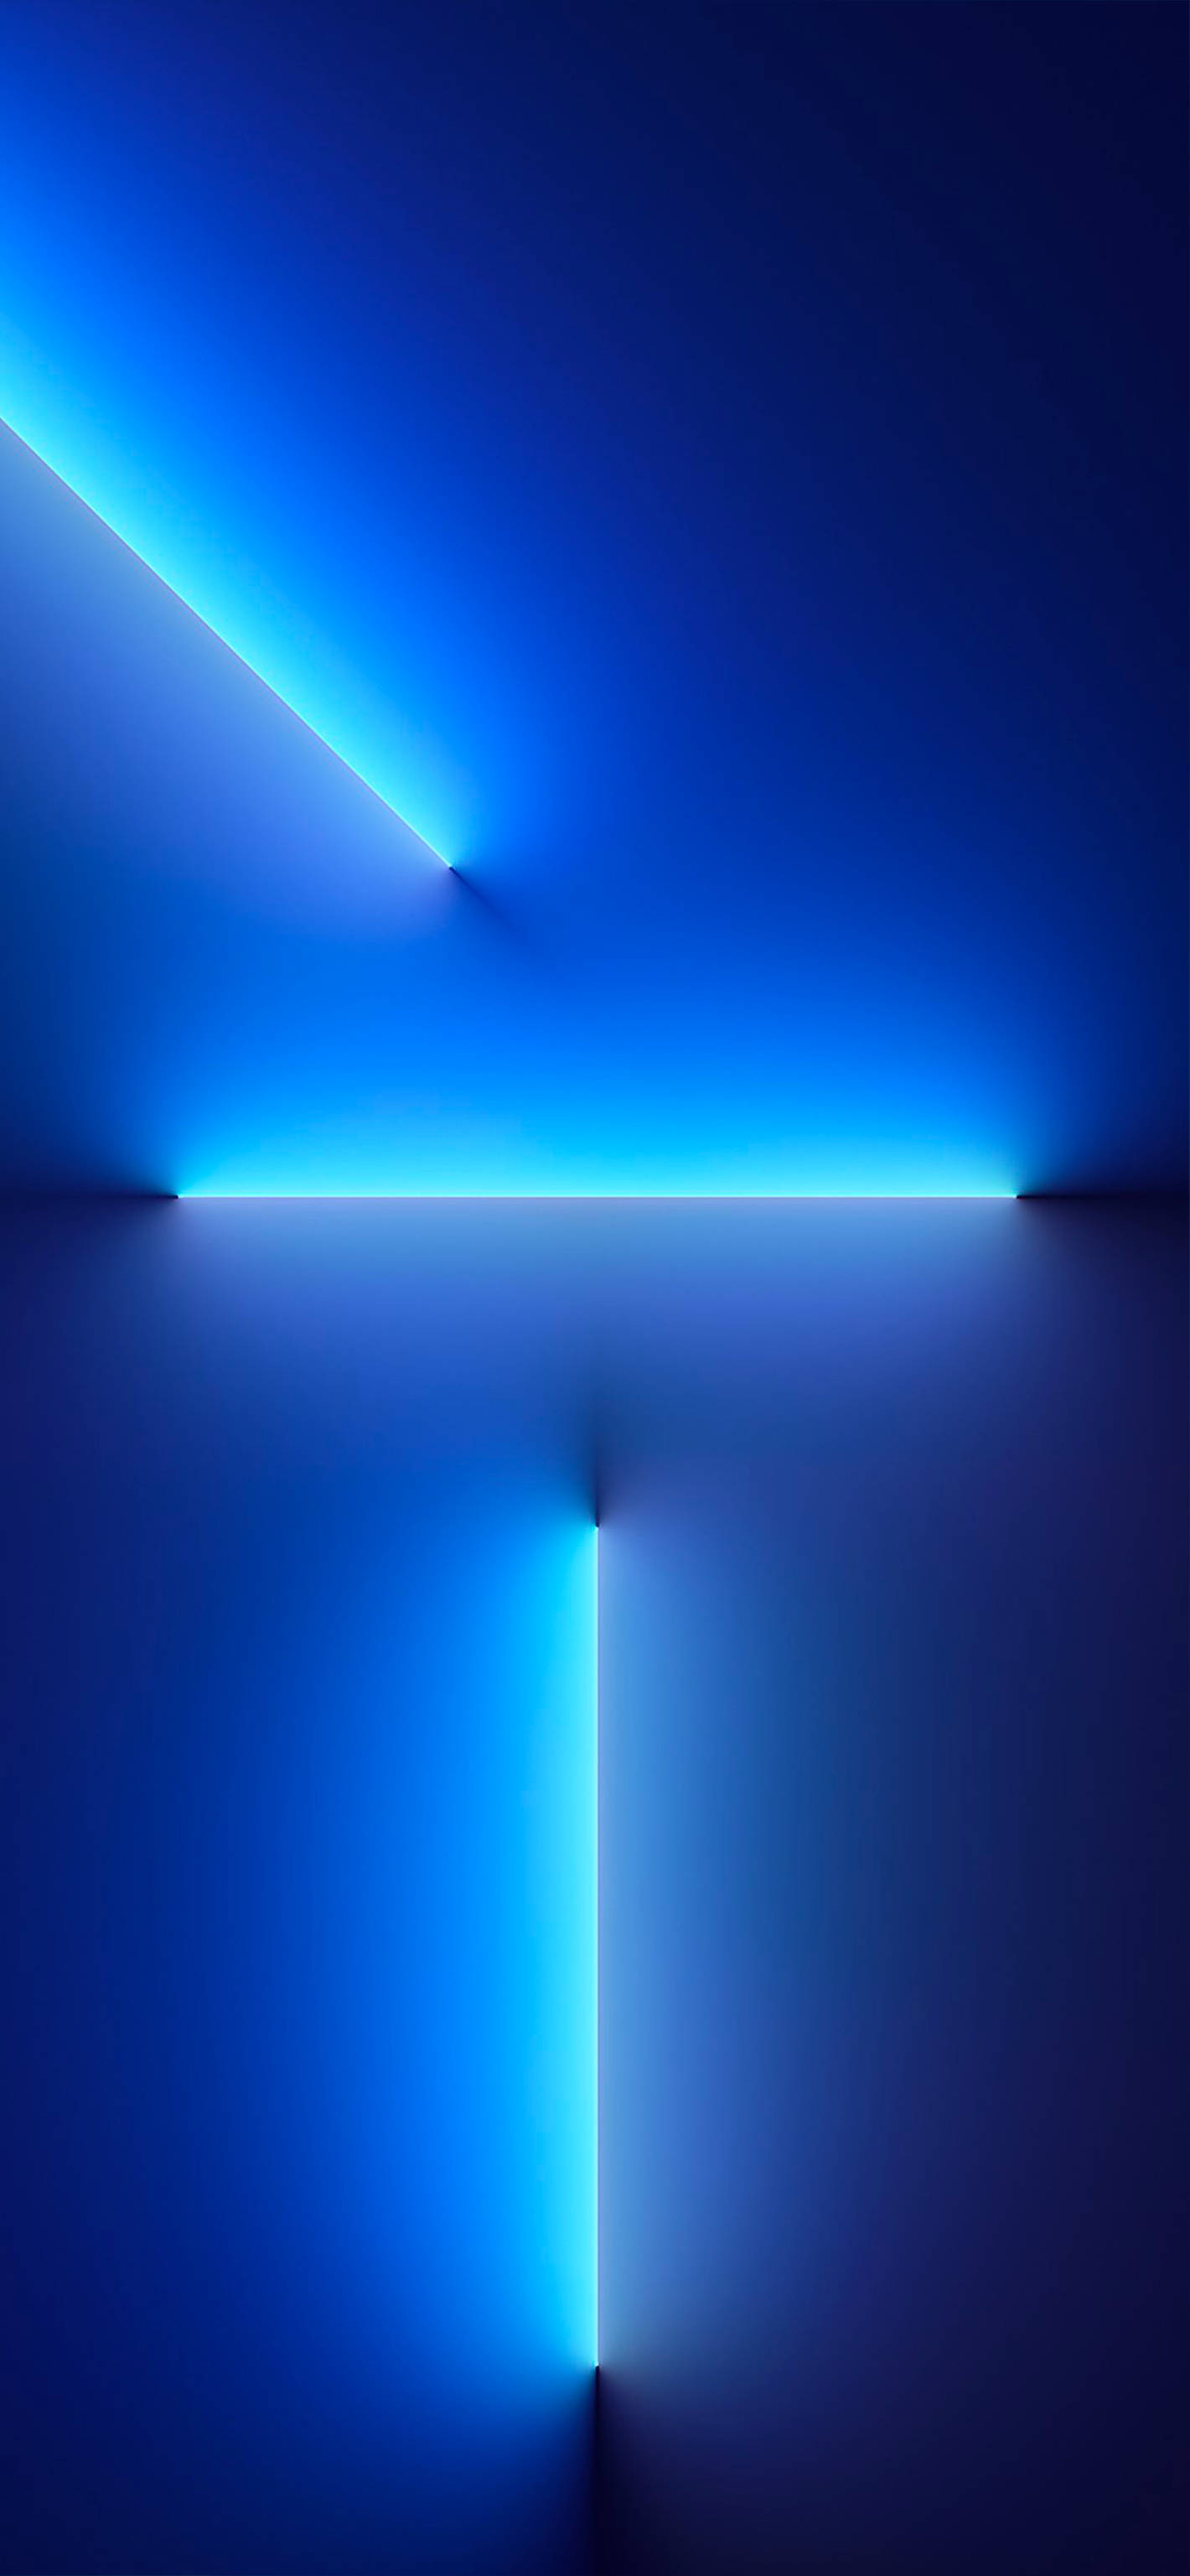 Tải về hình nền iOS 16 Neon Blue Lights ngay từ Wallpapers.com và làm mới màn hình của bạn. Các luồng ánh sáng neon sáng lấp lánh tạo ra một cảm giác rực rỡ như một đêm phố nơi không có giới hạn. Đừng để bỏ lỡ cơ hội này!